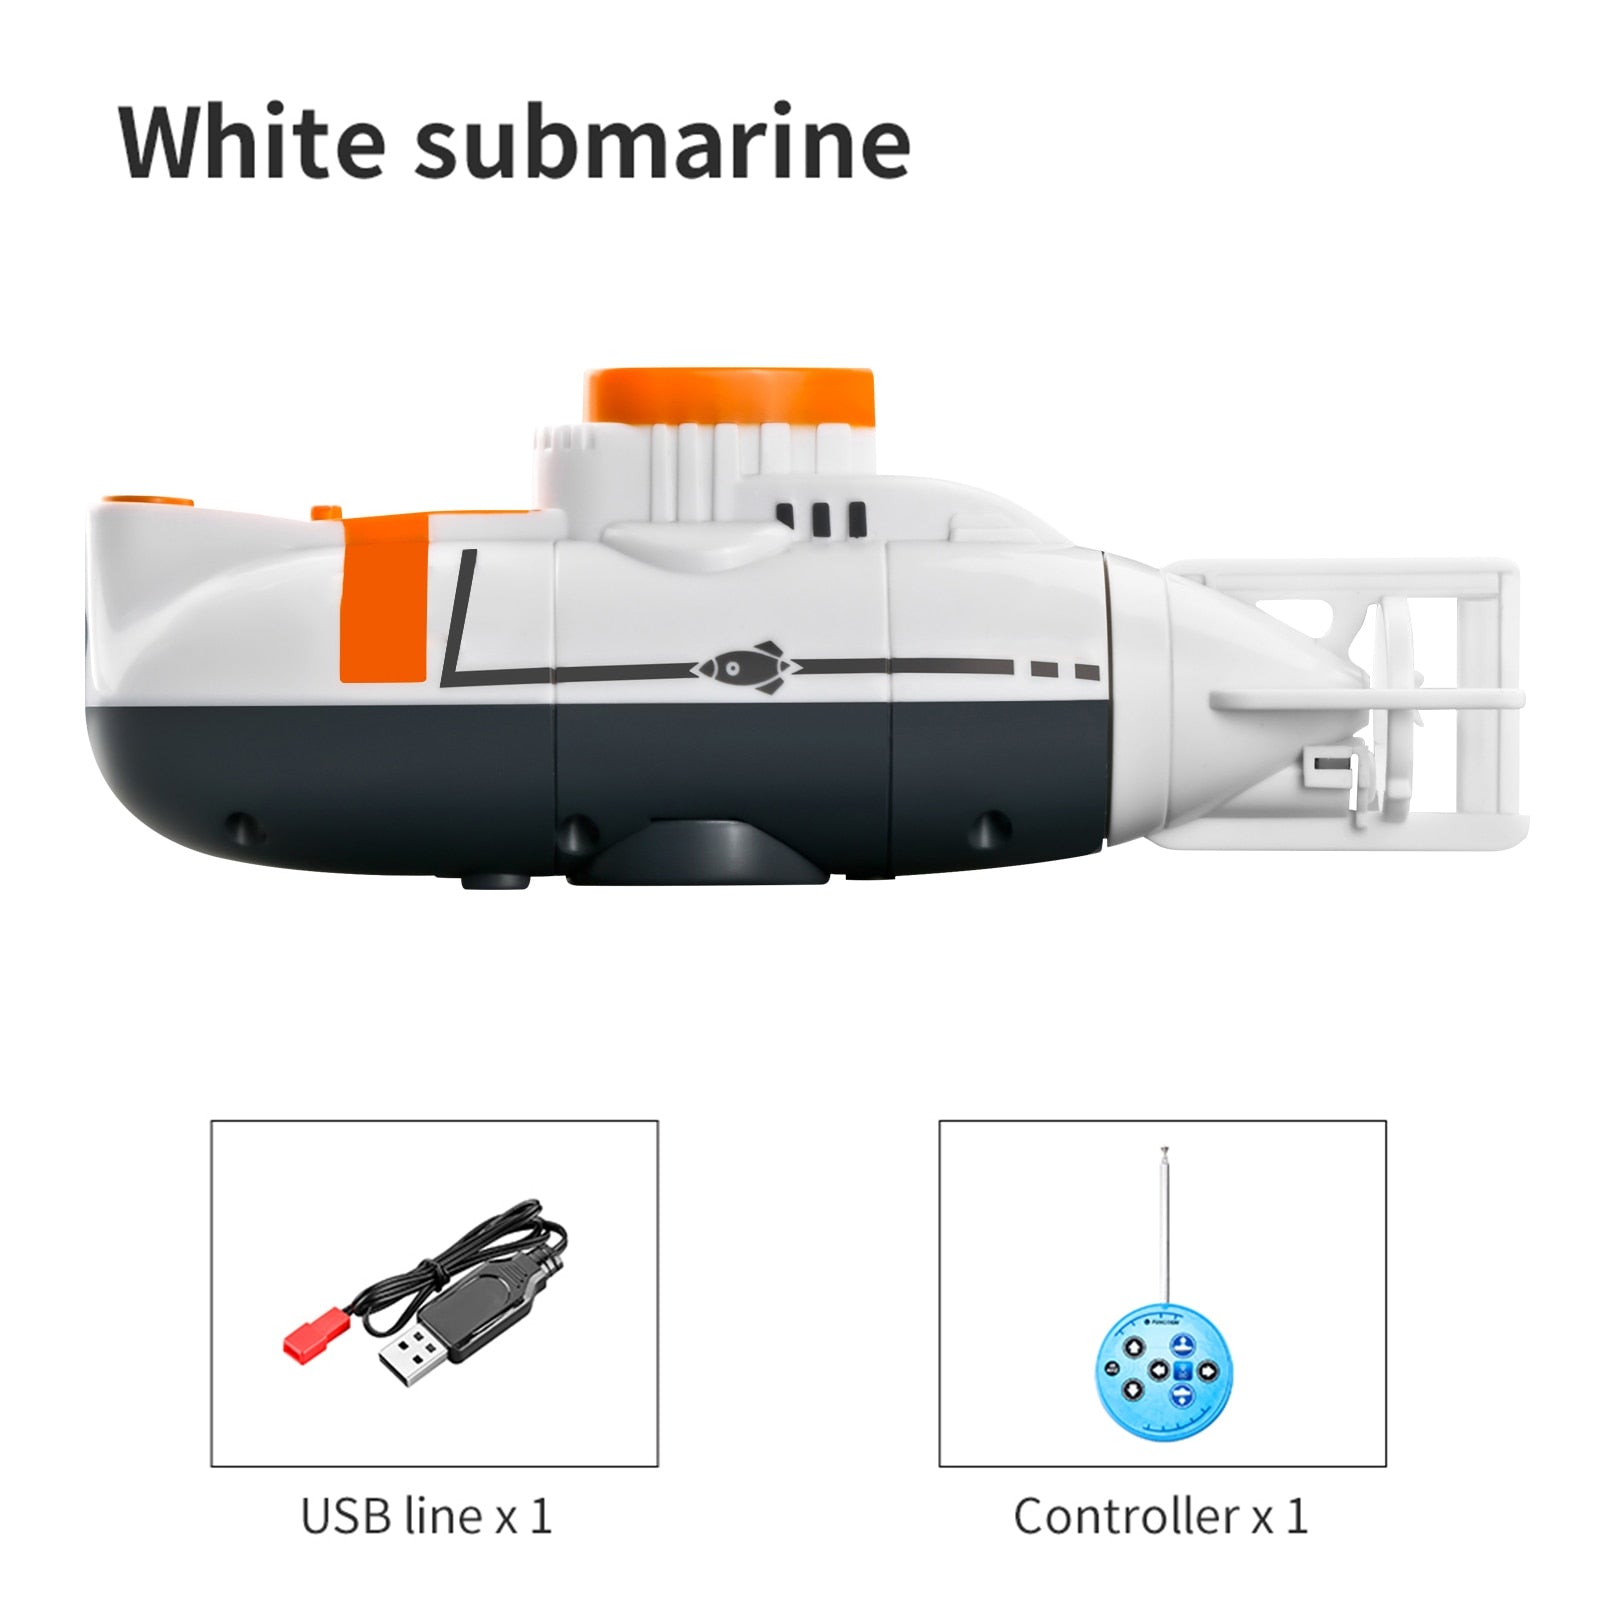 Mini RC Submarine